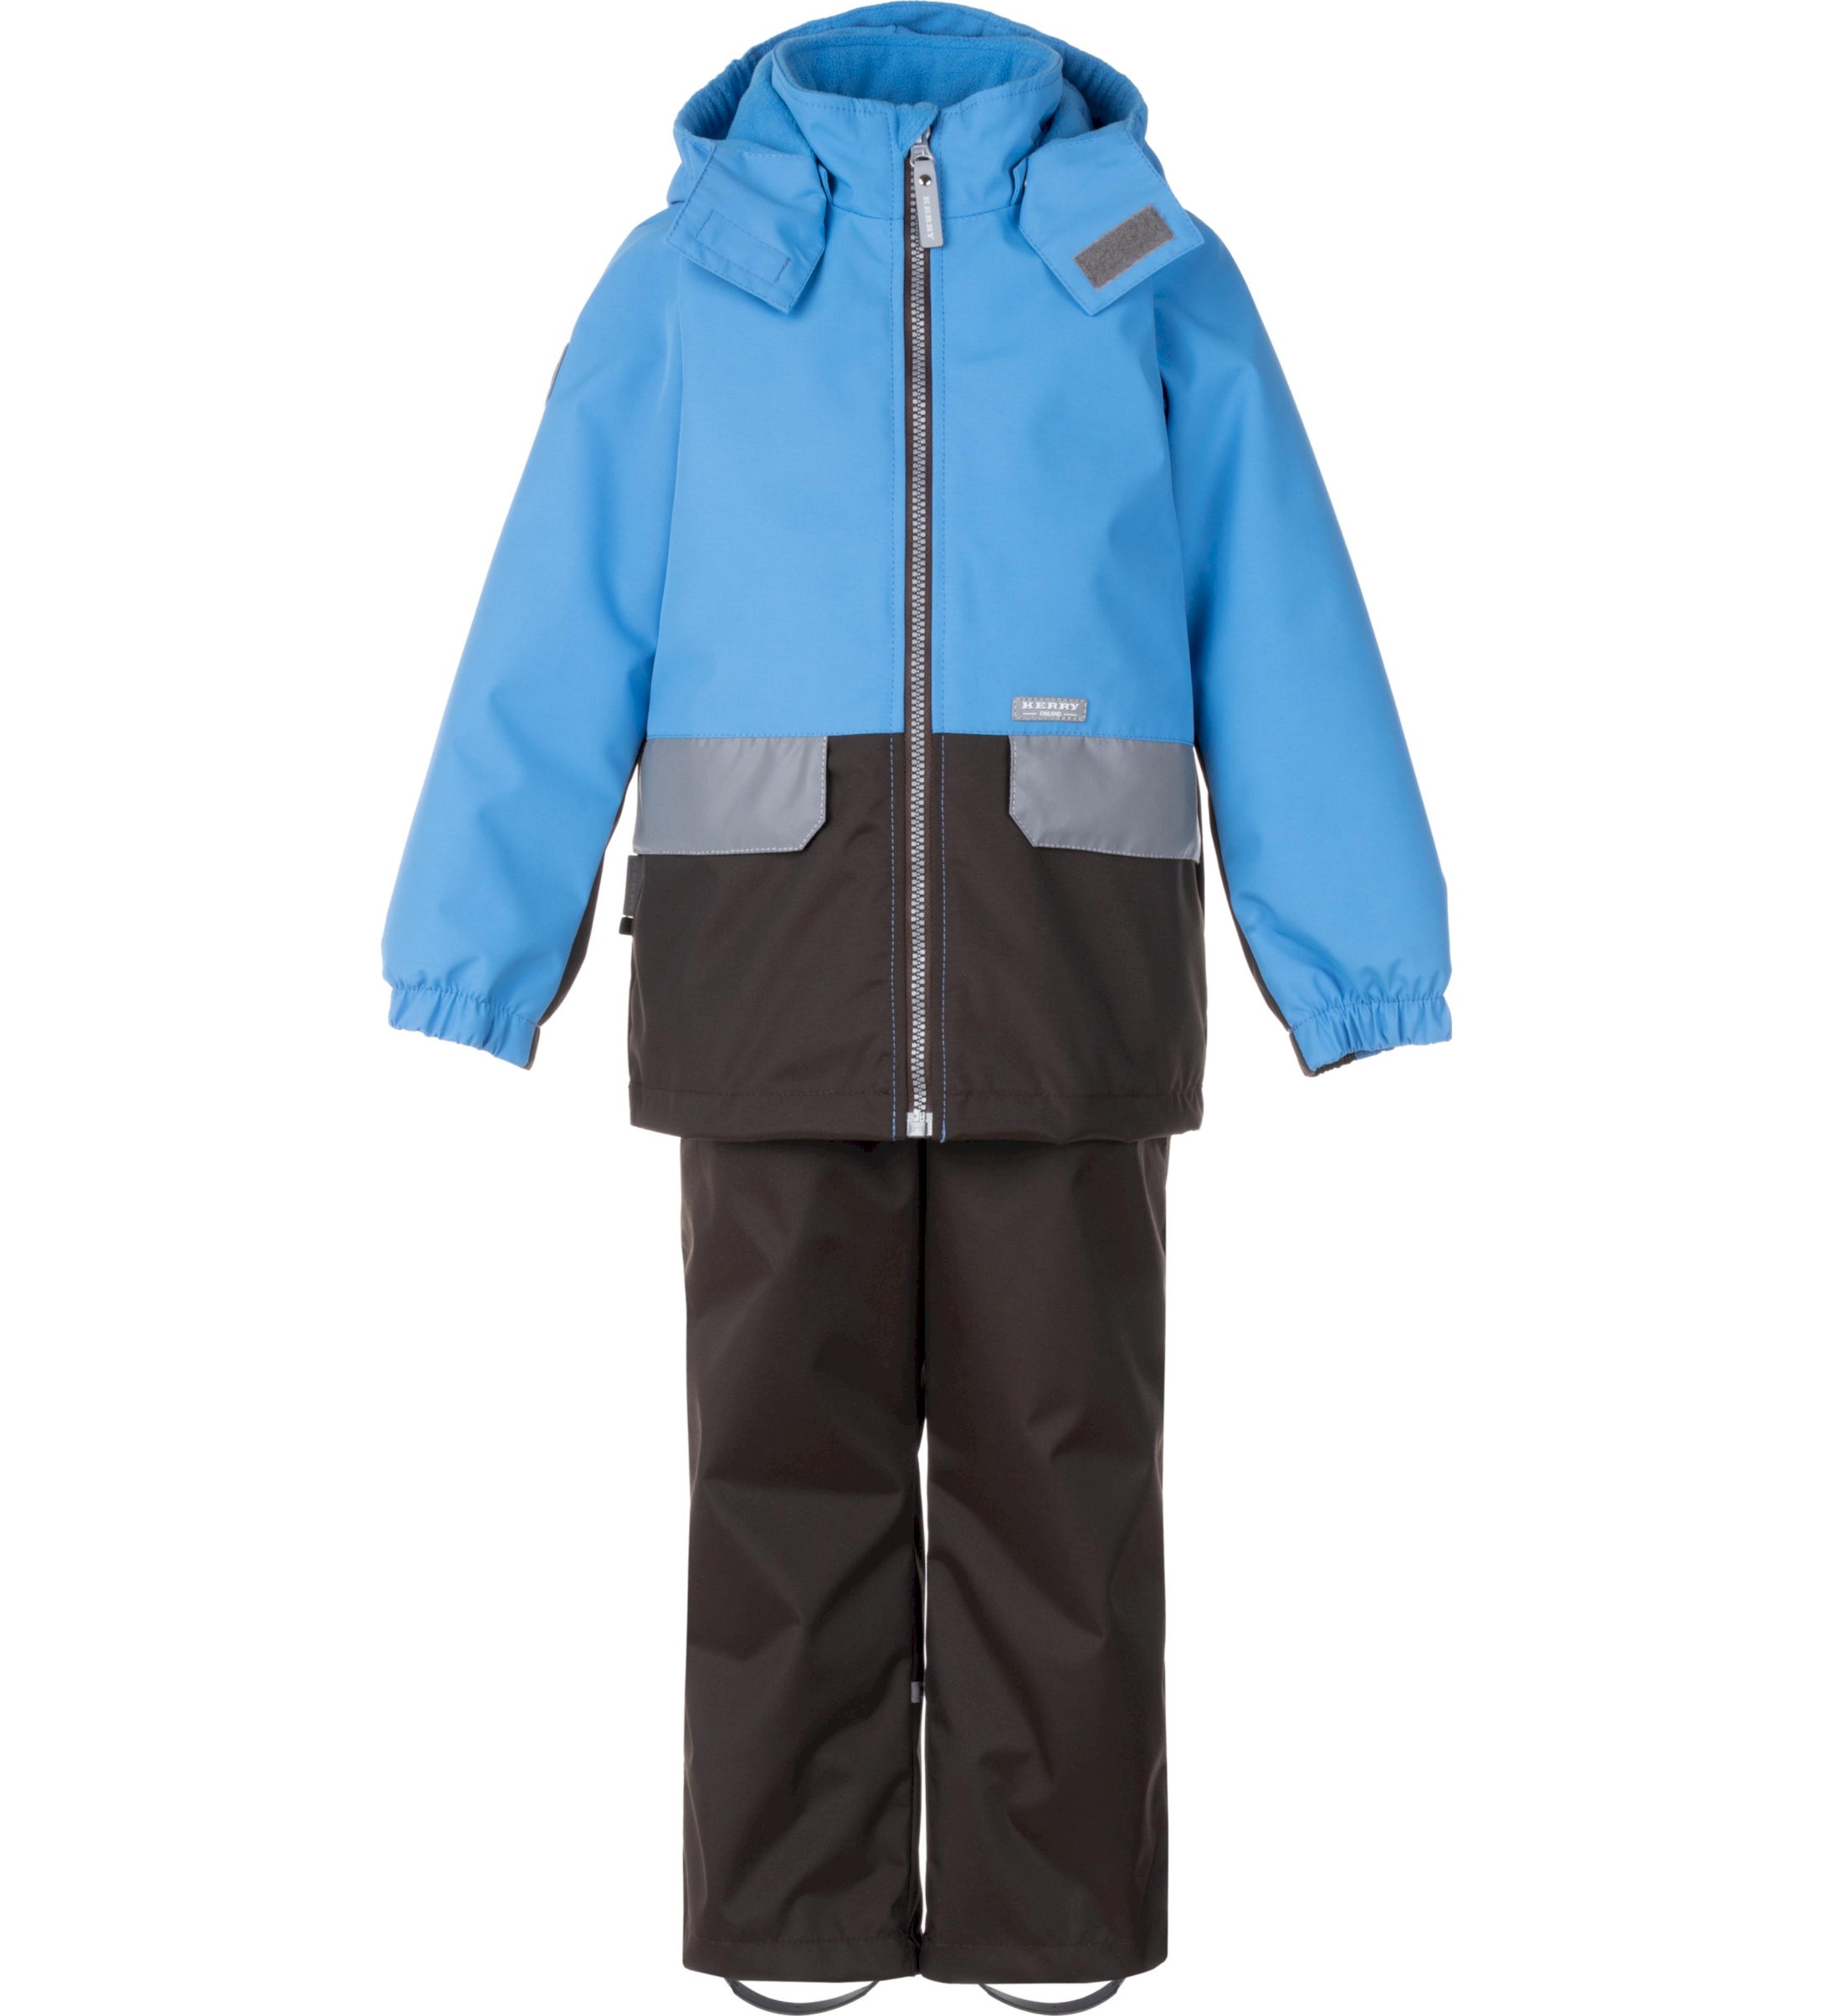 Комплект верхней одежды детский KERRY K24020, голубой; серый, 110 пылесос bort bac 500 22 900 вт сухая влажная уборка 22 л серый